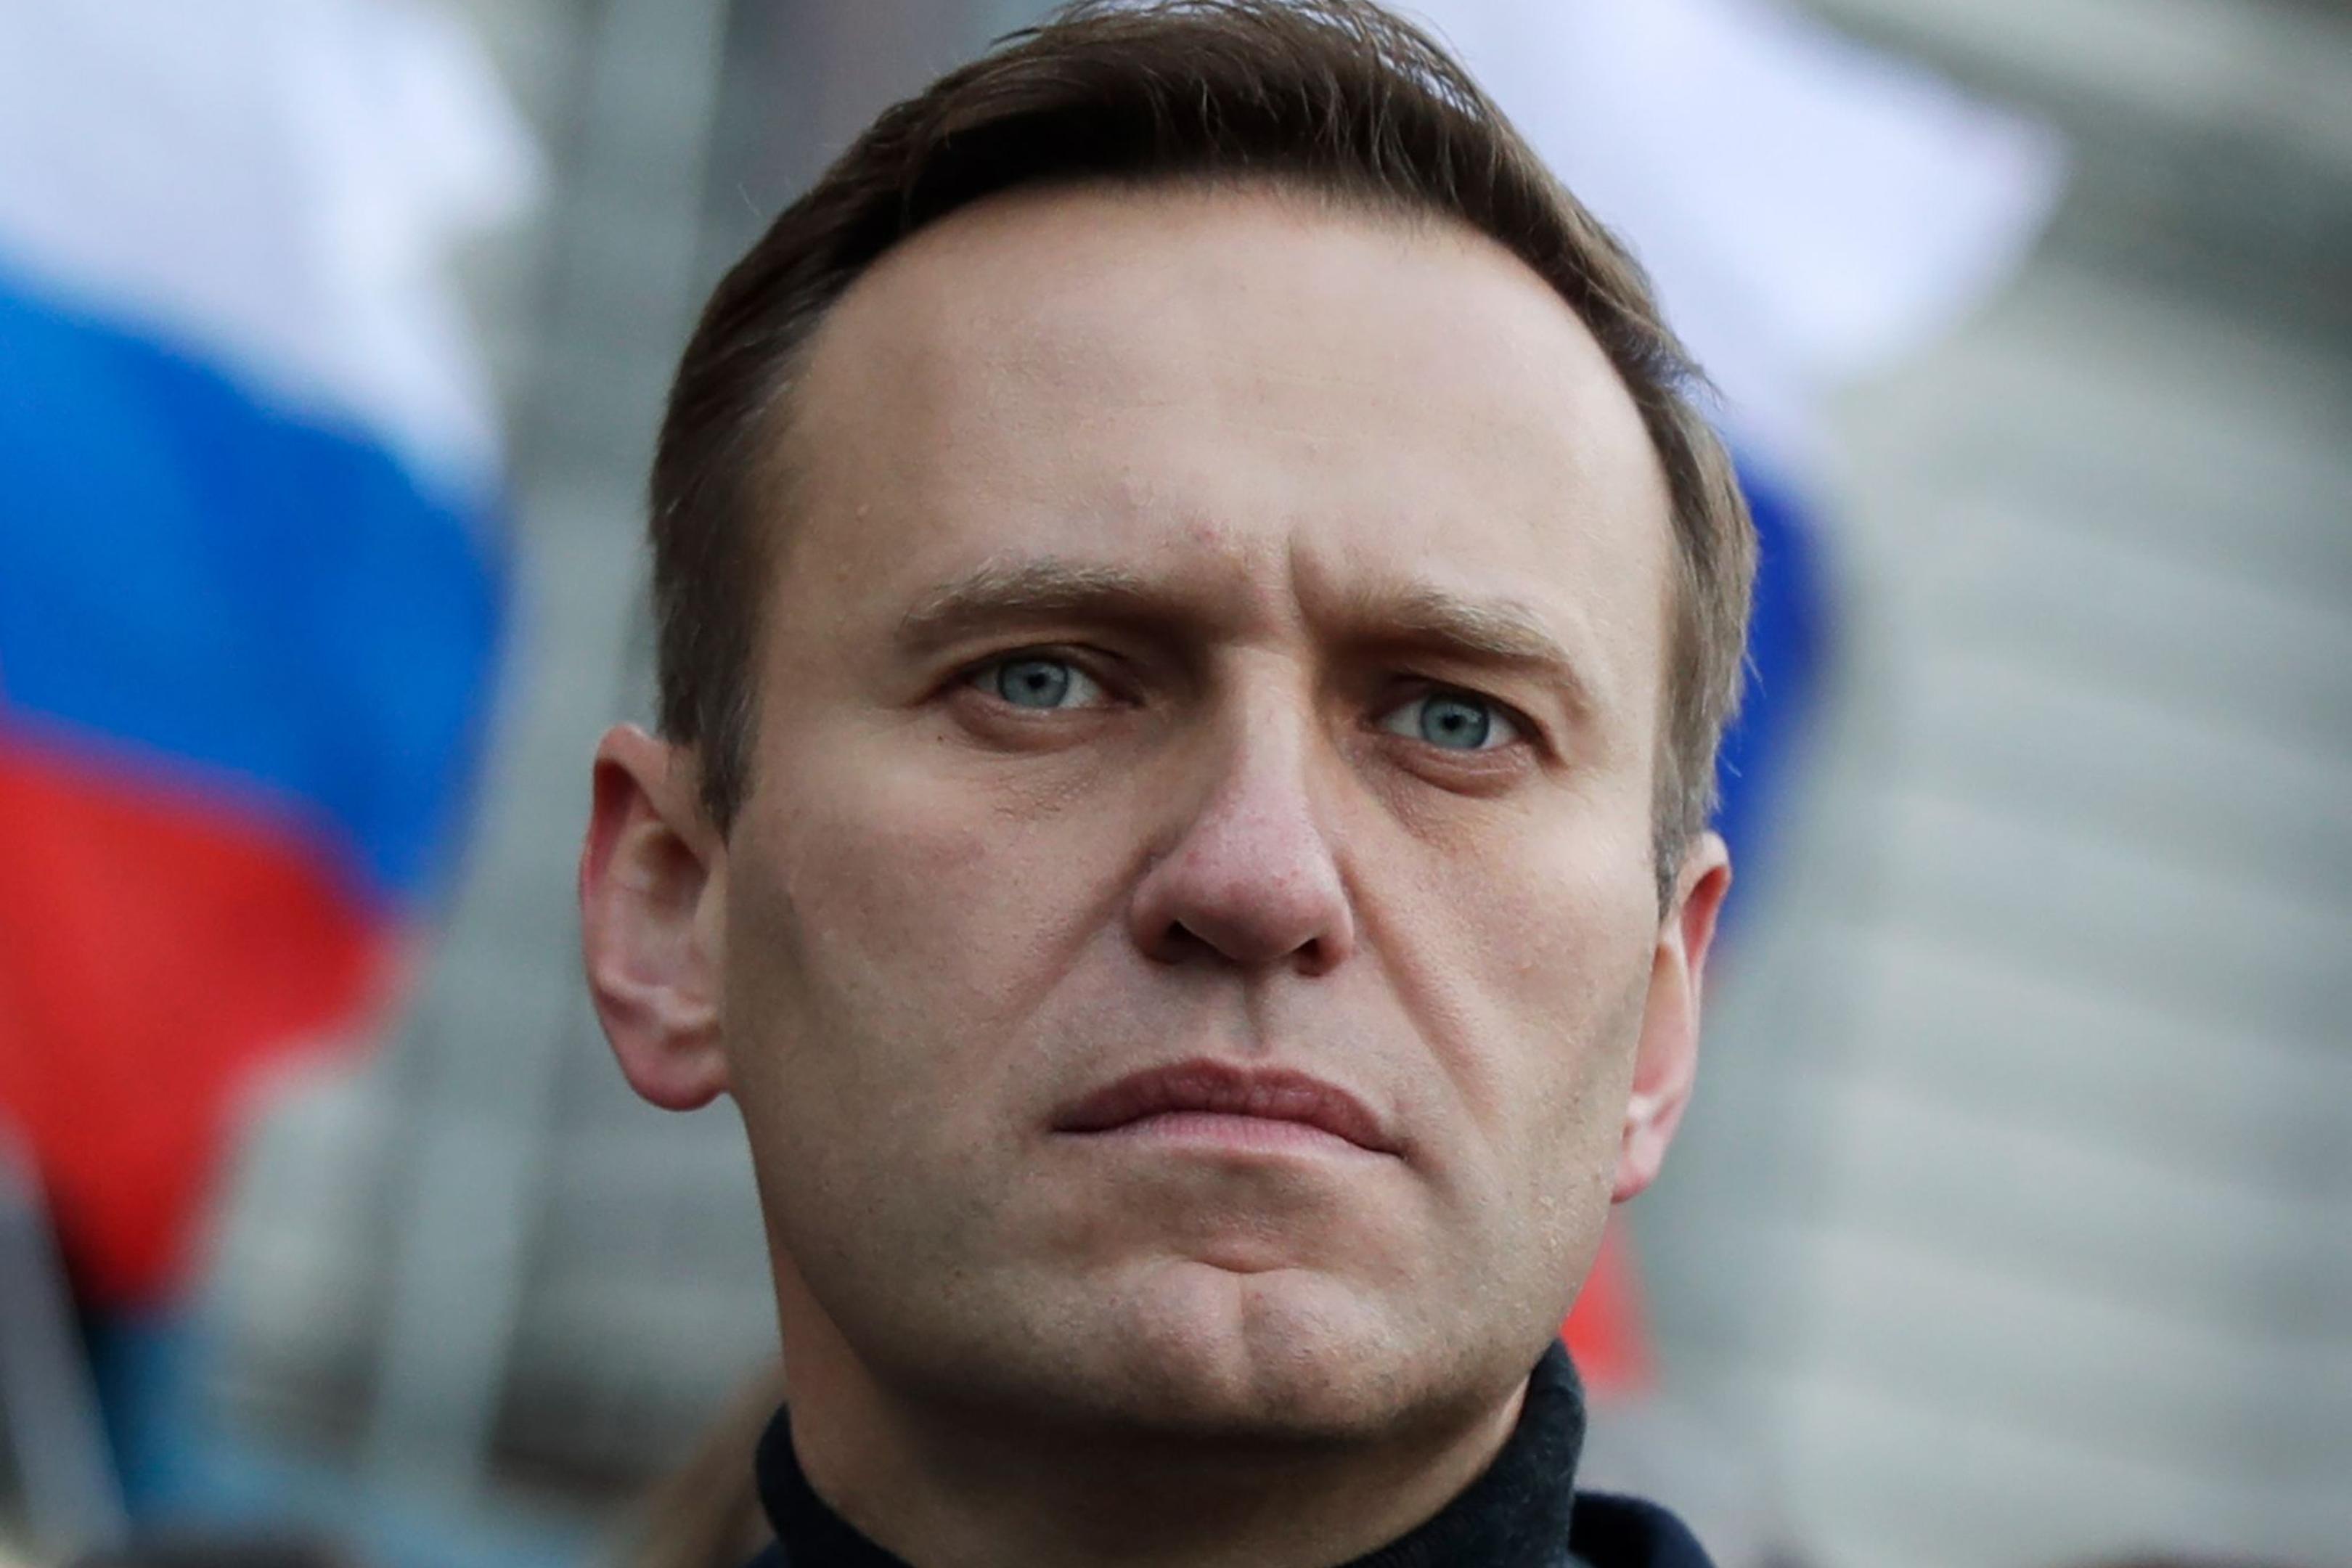 Nawalny starb am 16. Februar nach Behördenangaben im Straflager mit dem inoffiziellen Namen „Polarwolf“. Die Umstände seines Todes sind nicht geklärt.